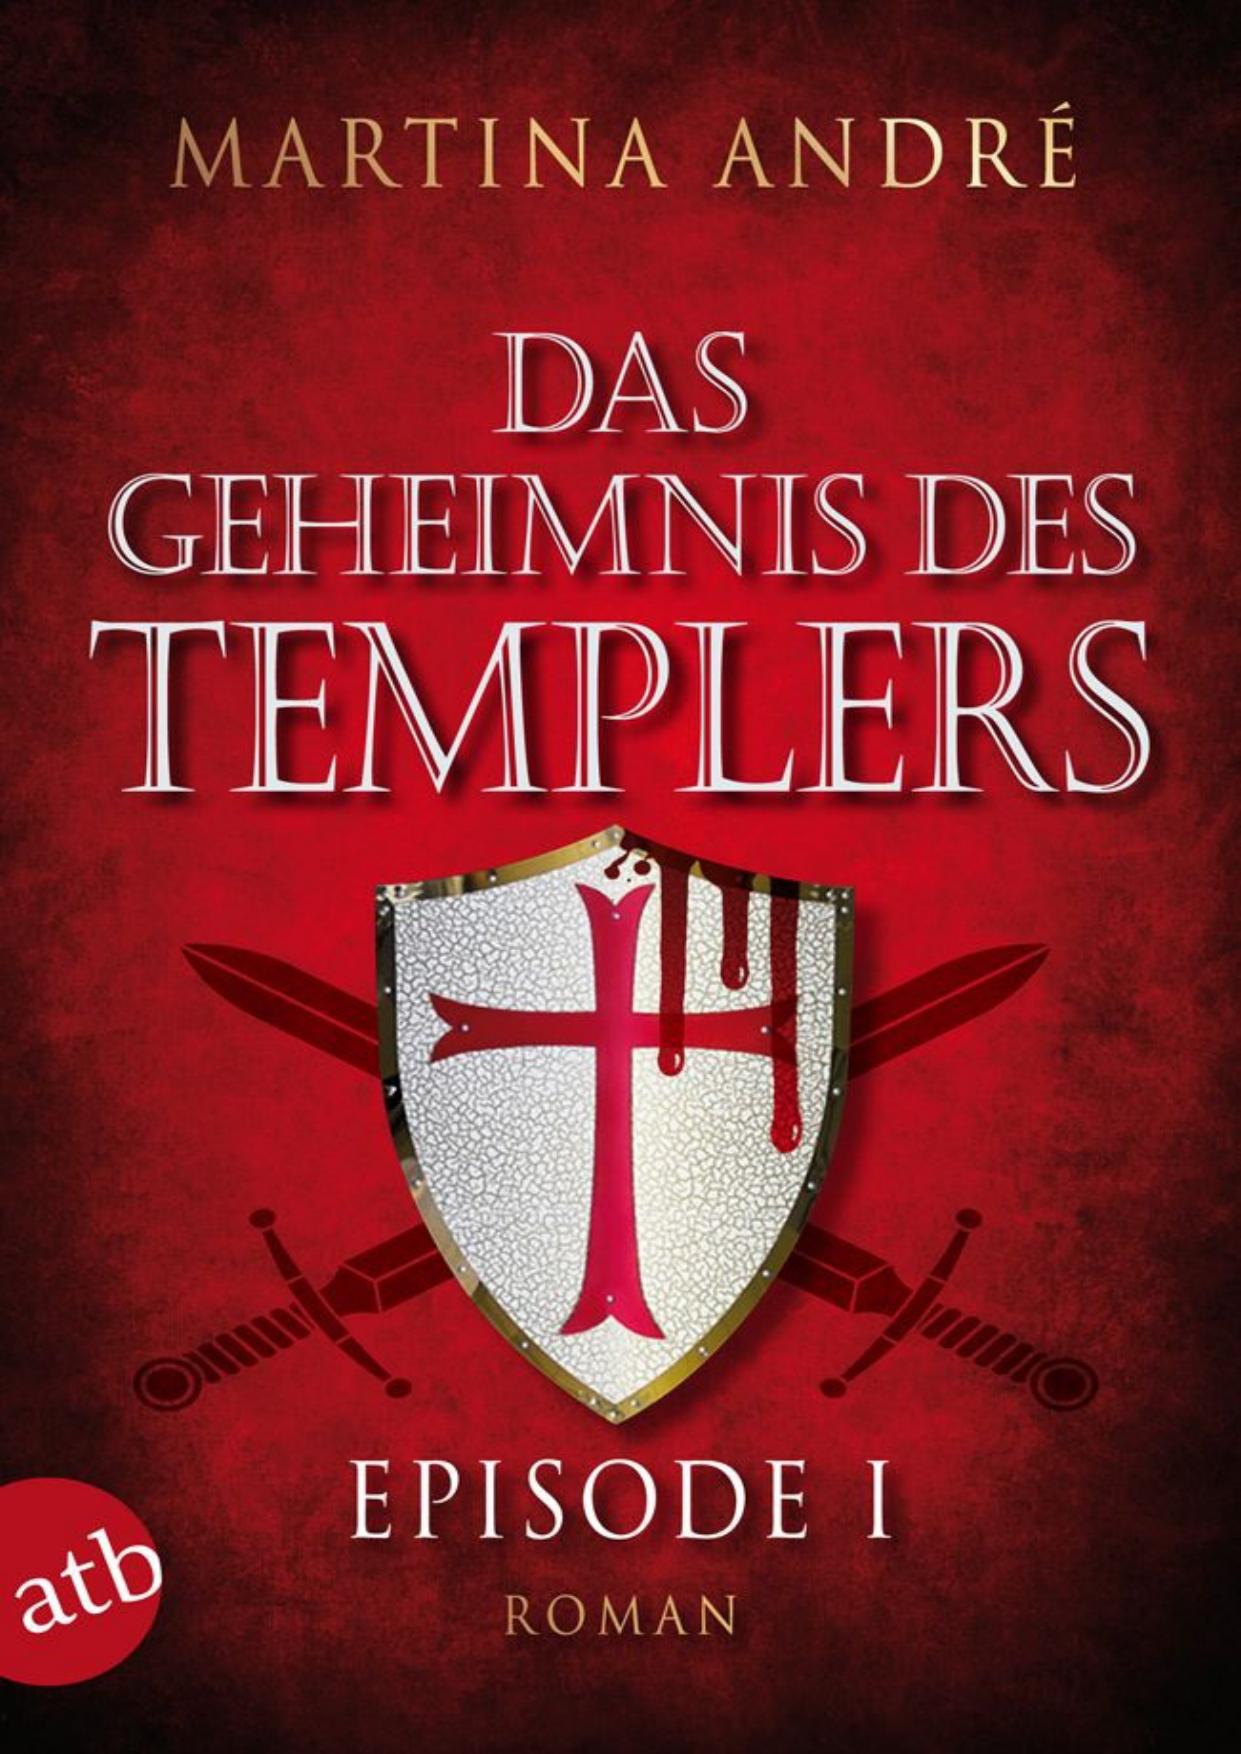 Das Geheimnis des Templers - Episode I: Ein heiliger Schwur (German Edition)